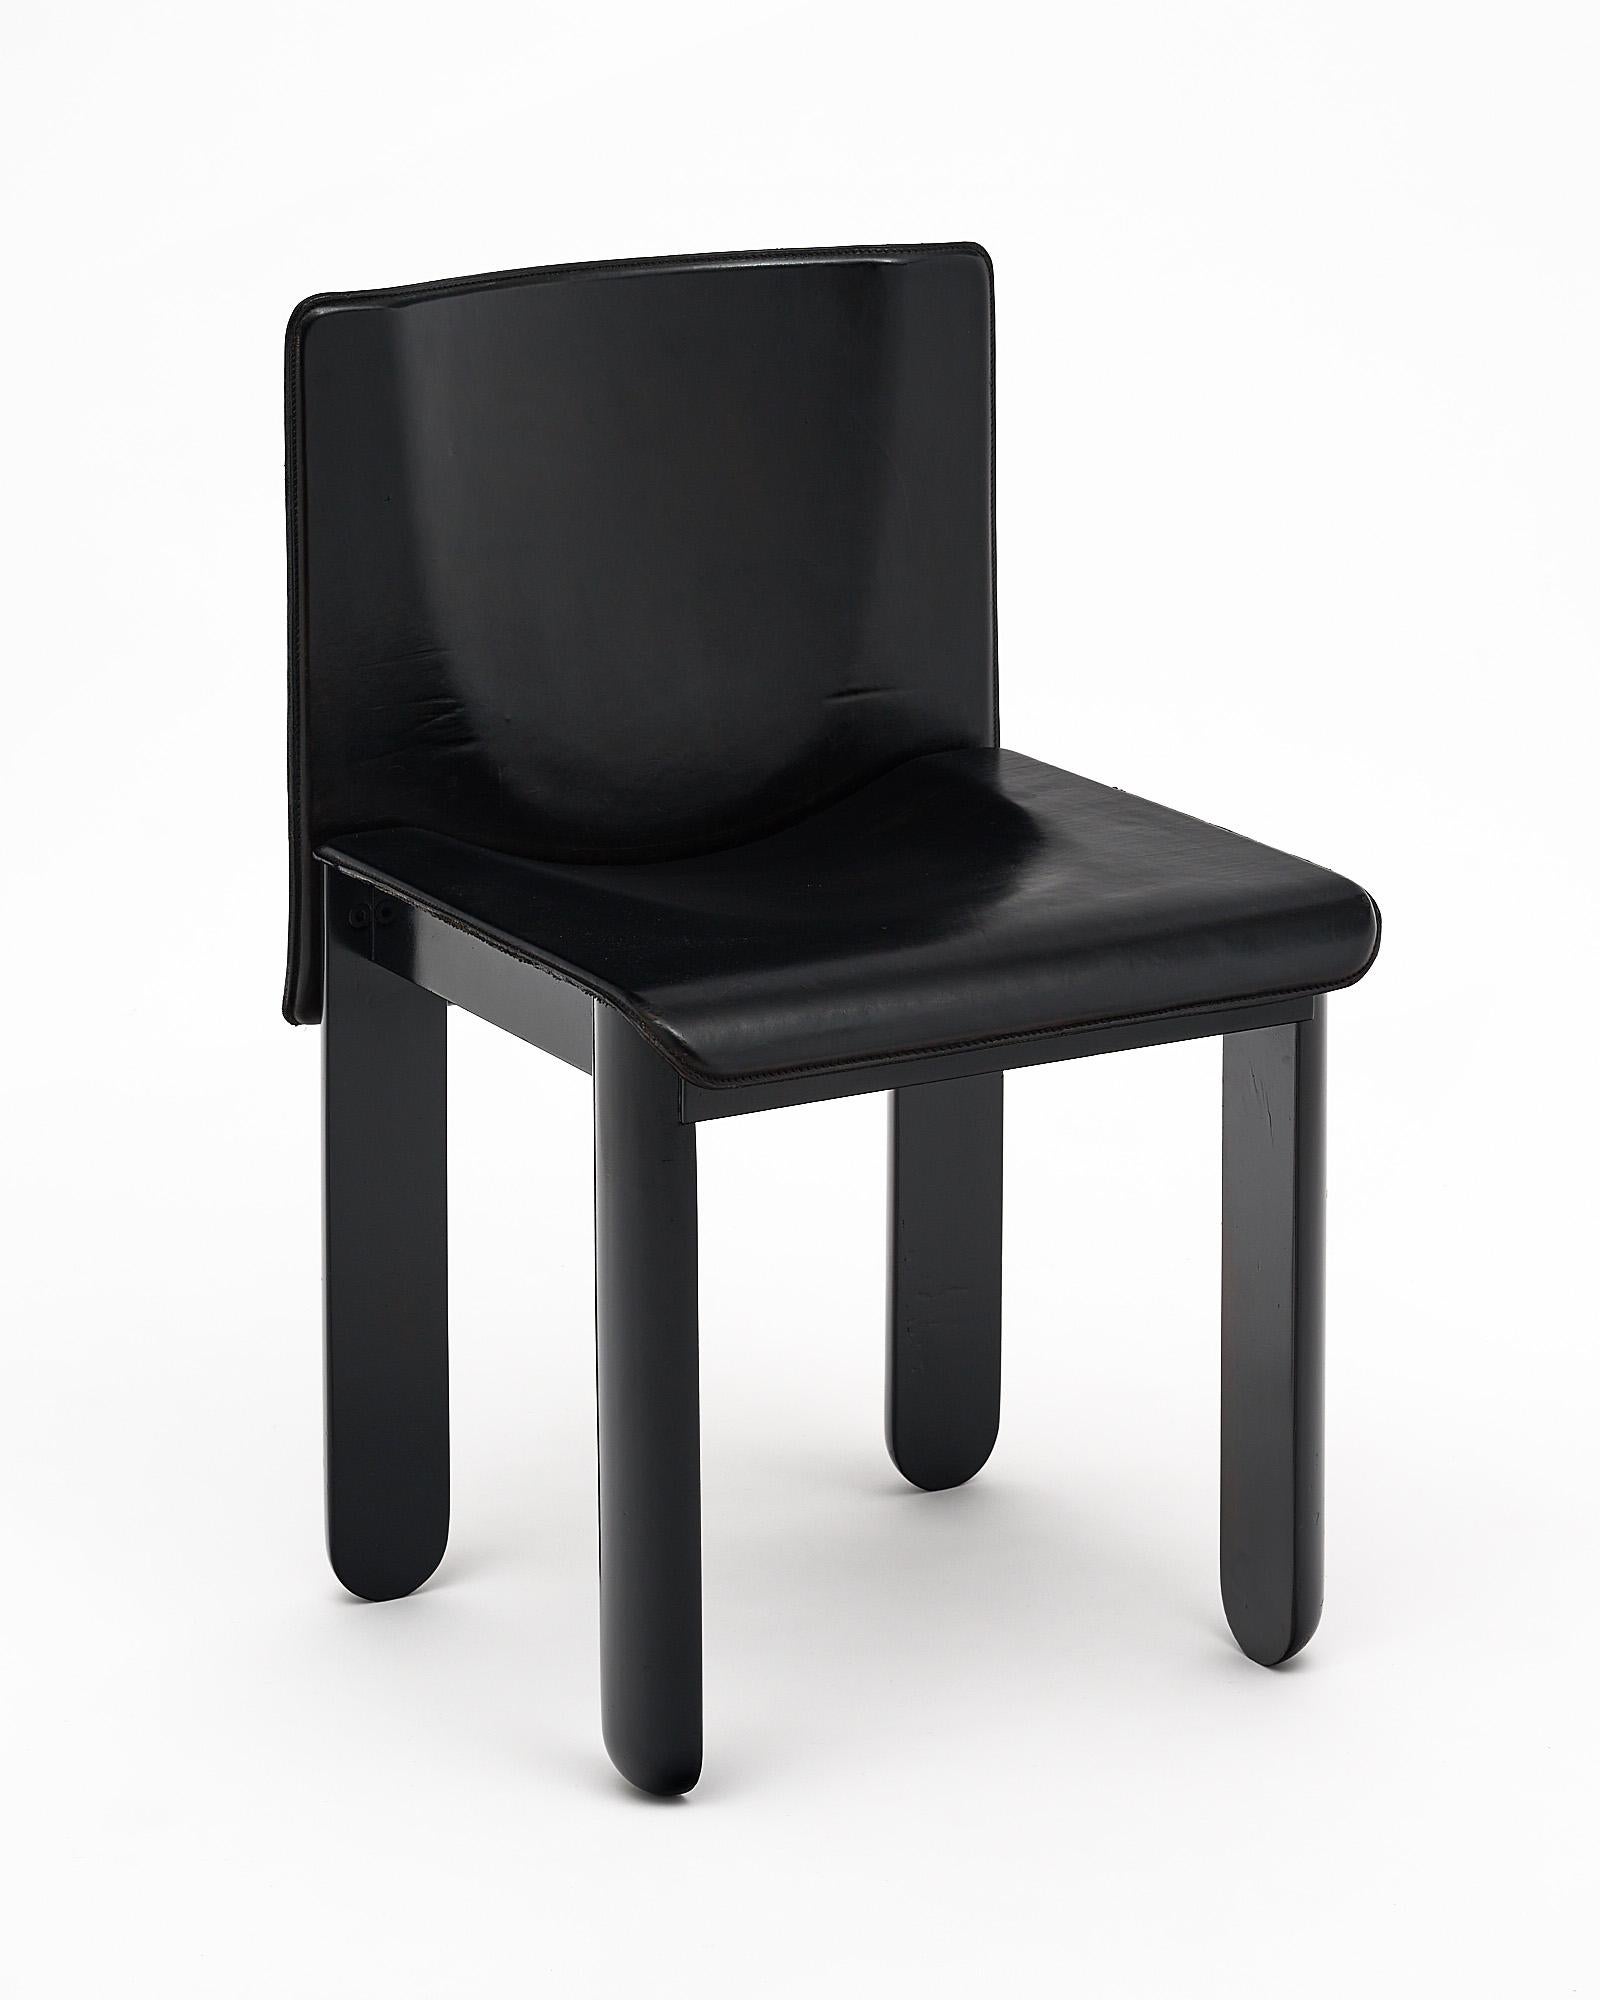 Satz von vier Stühlen, Italienisch, in der Art von Afra und Tobia Scarpa. Die eleganten und robusten Stühle haben einen dicken schwarzen Ledersitz und vier halbrunde ebonisierte Holzbeine.